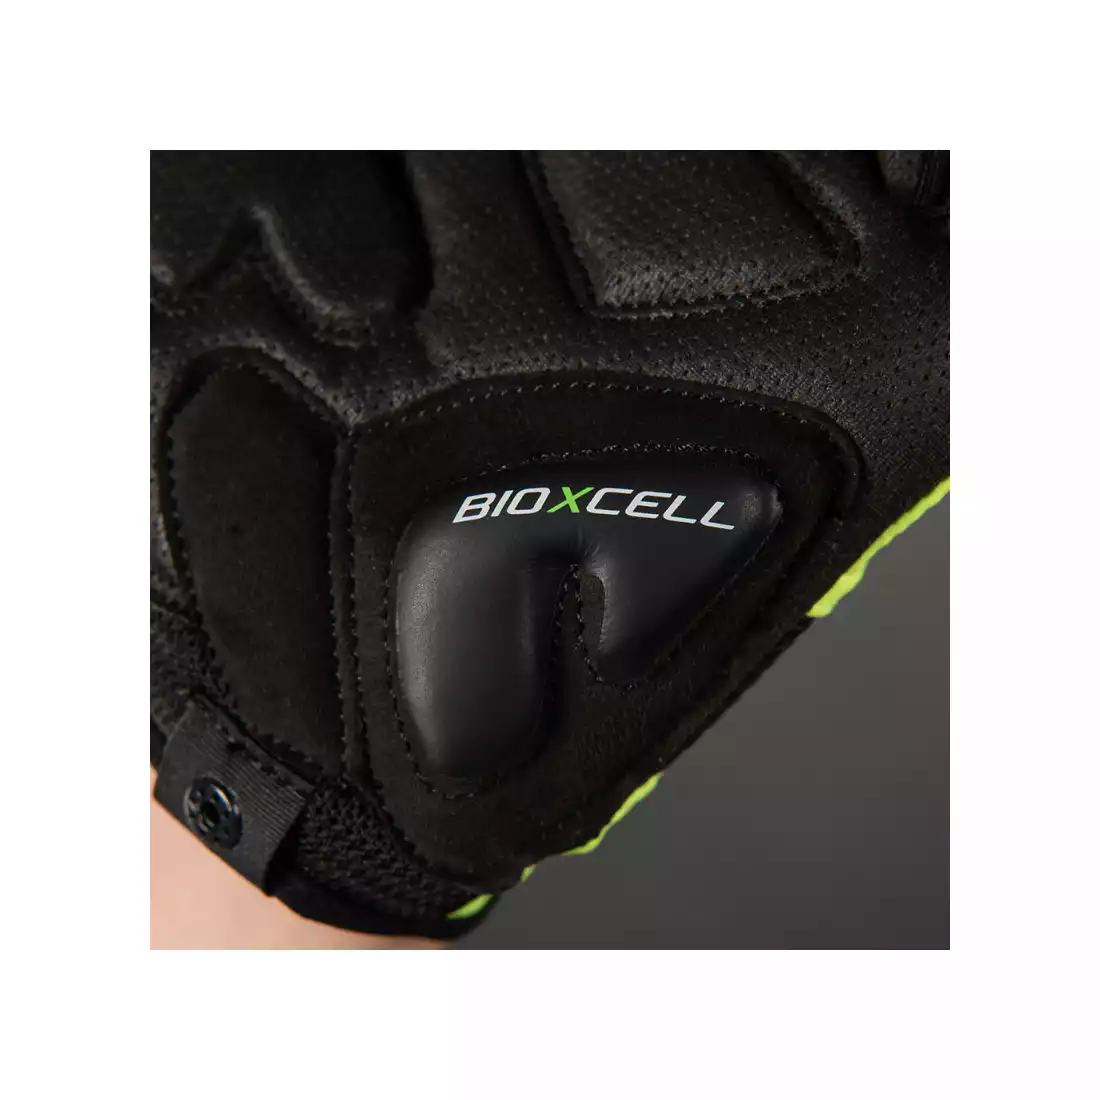 CHIBA rękawiczki rowerowe bioxcell neon żółty 3060120